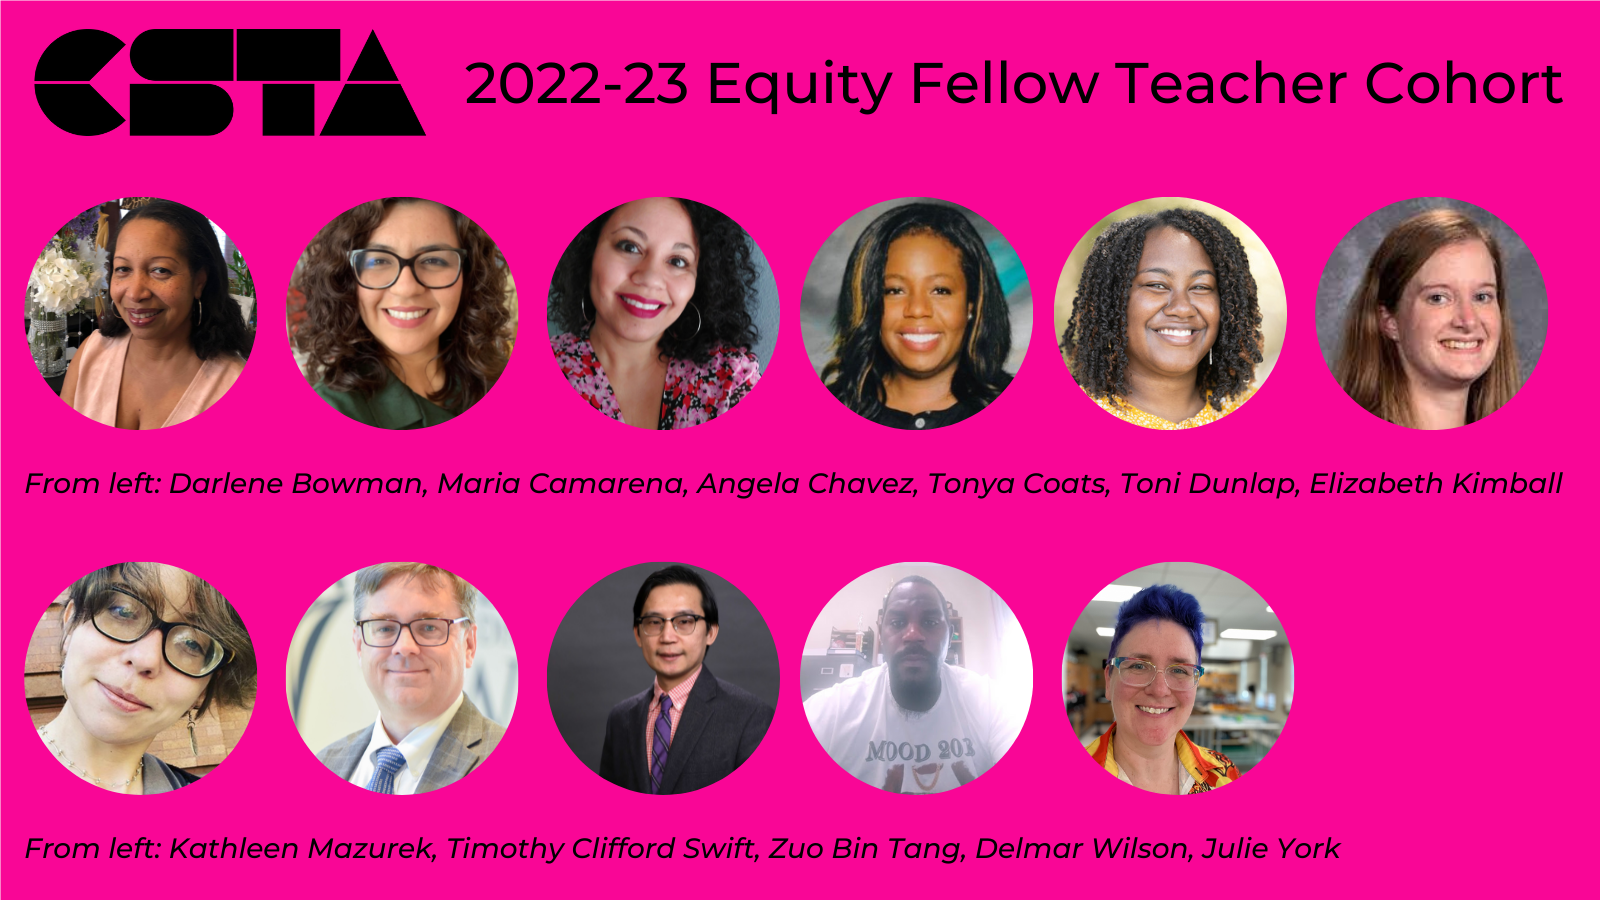 CSTA 2022-23 equity fellow teacher cohort.
Headshots from every equity fellow teacher.